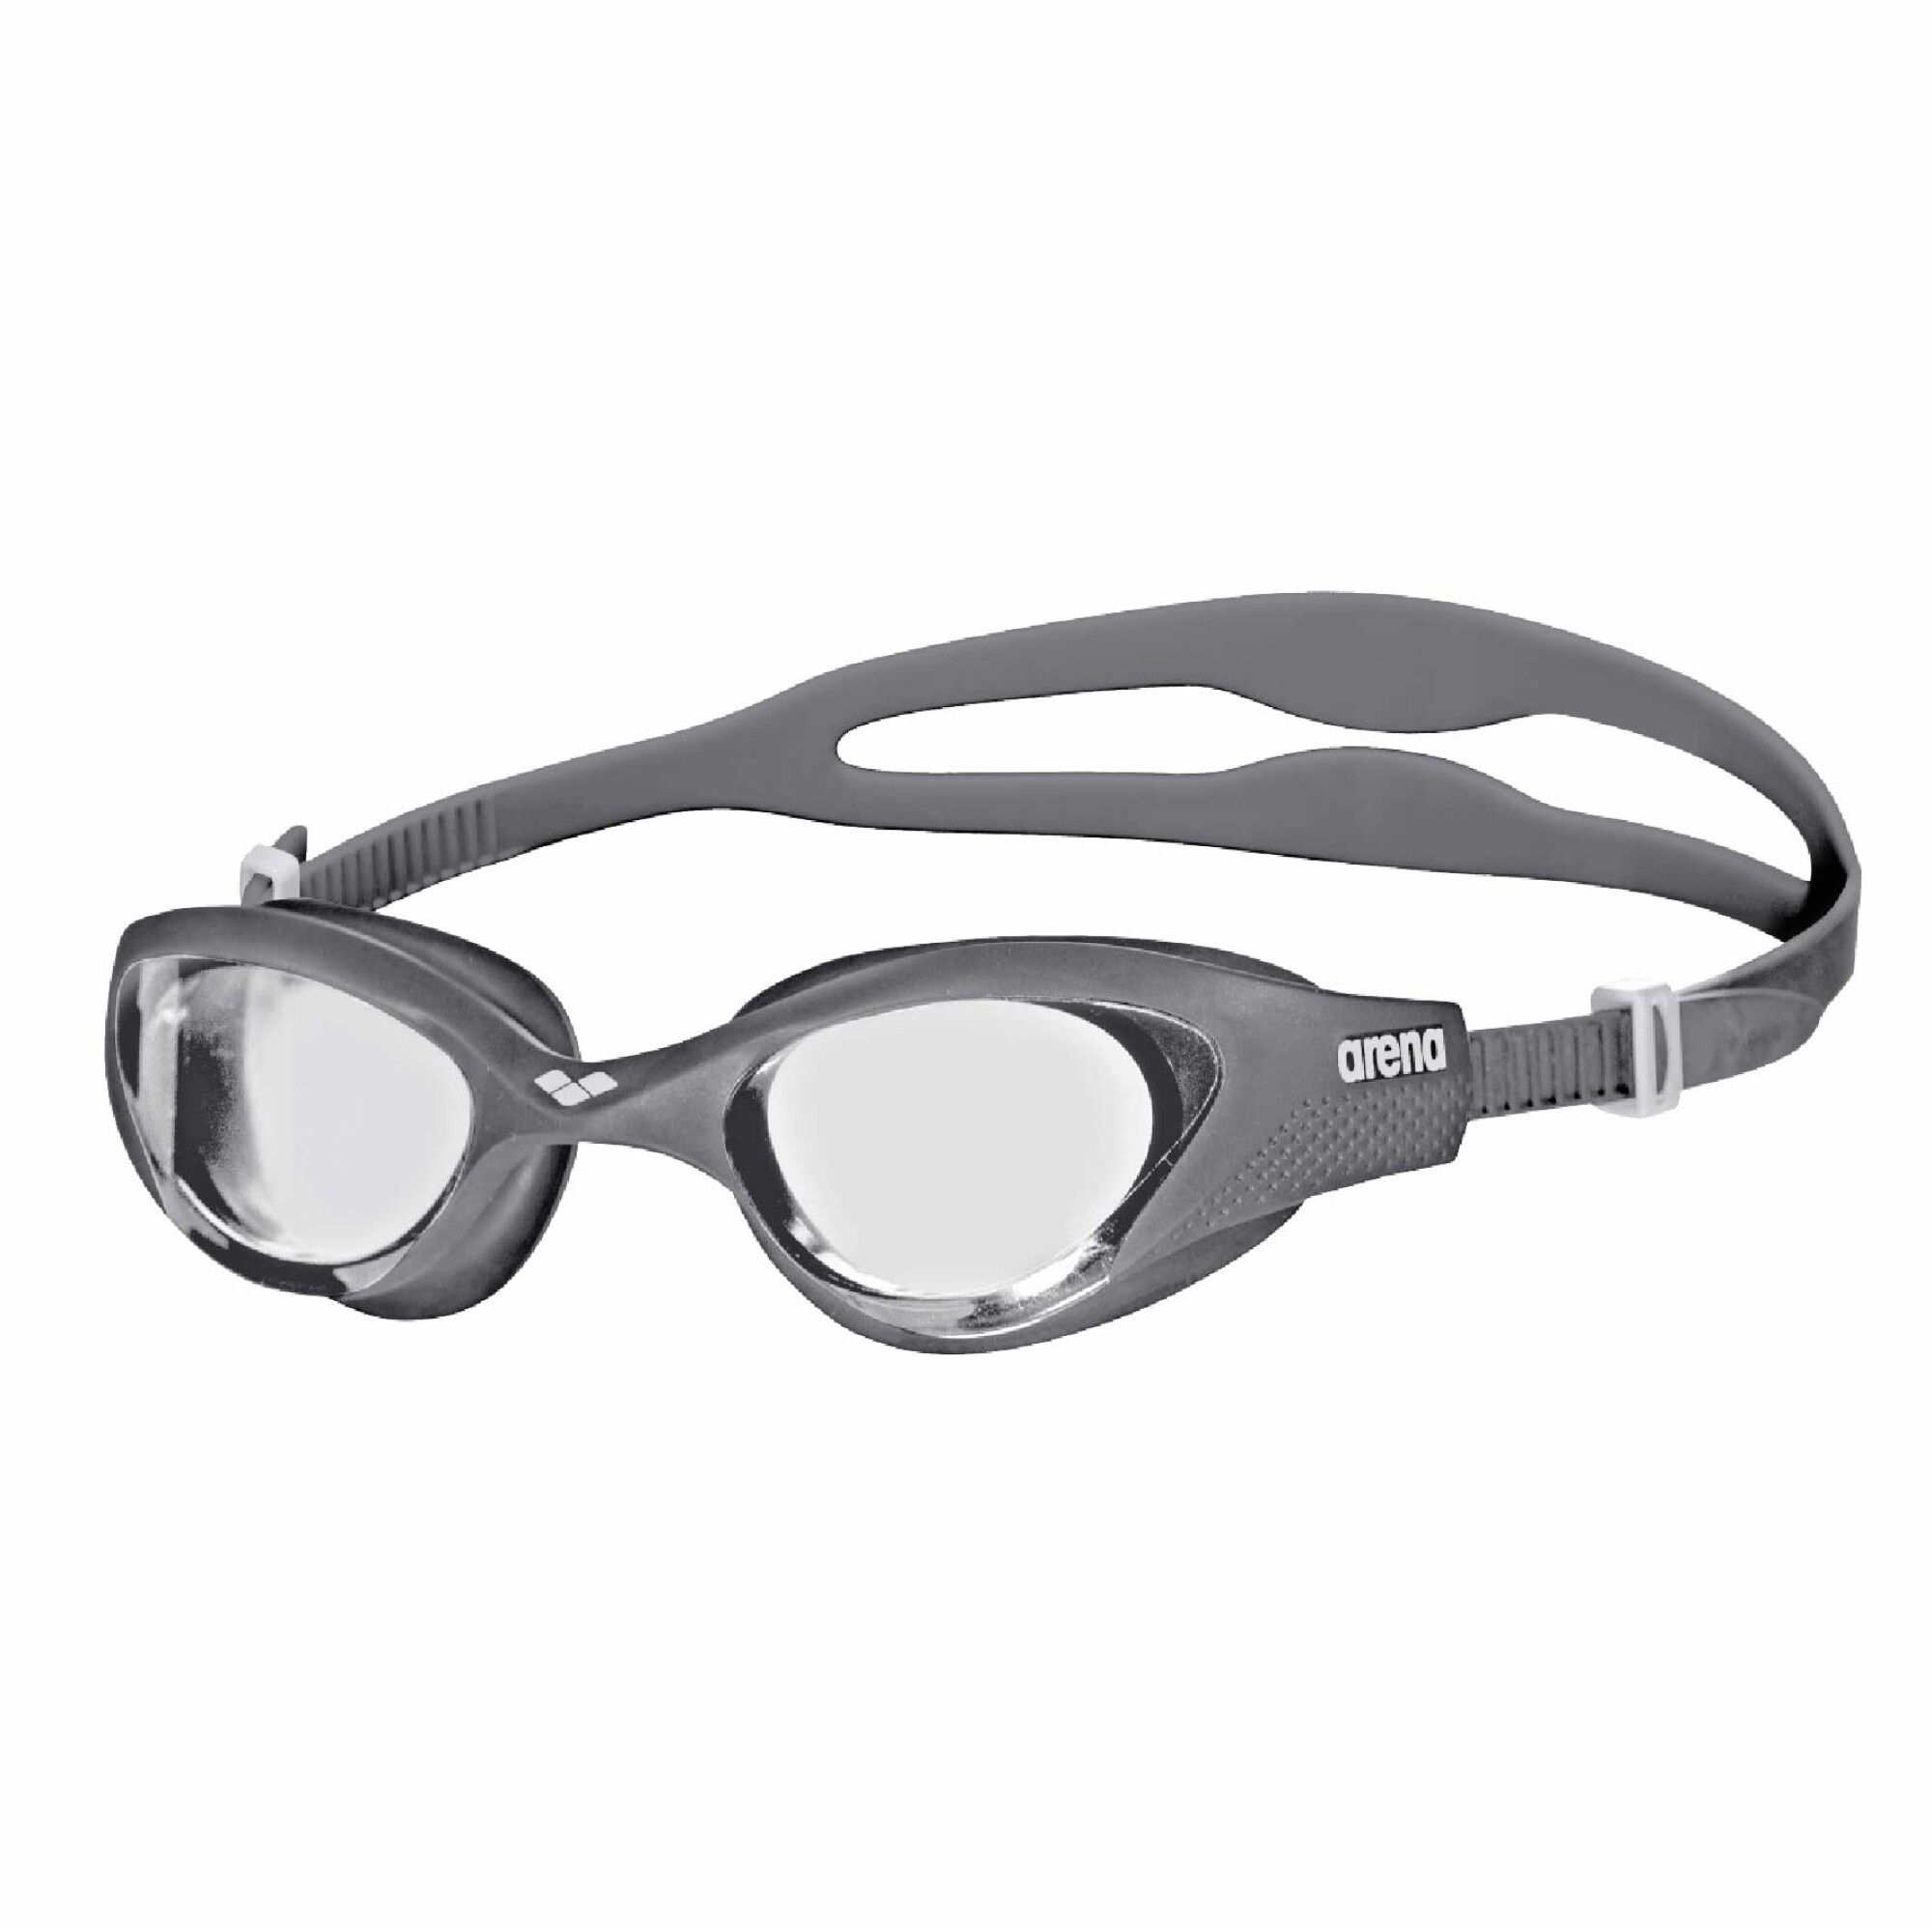  Arena The One - Gafas de natación unisex para adultos, para  hombres y mujeres, ajuste hermético, sellos a prueba de órbita, lente de  espejo con revestimiento antivaho. Azul gris/azul negro 